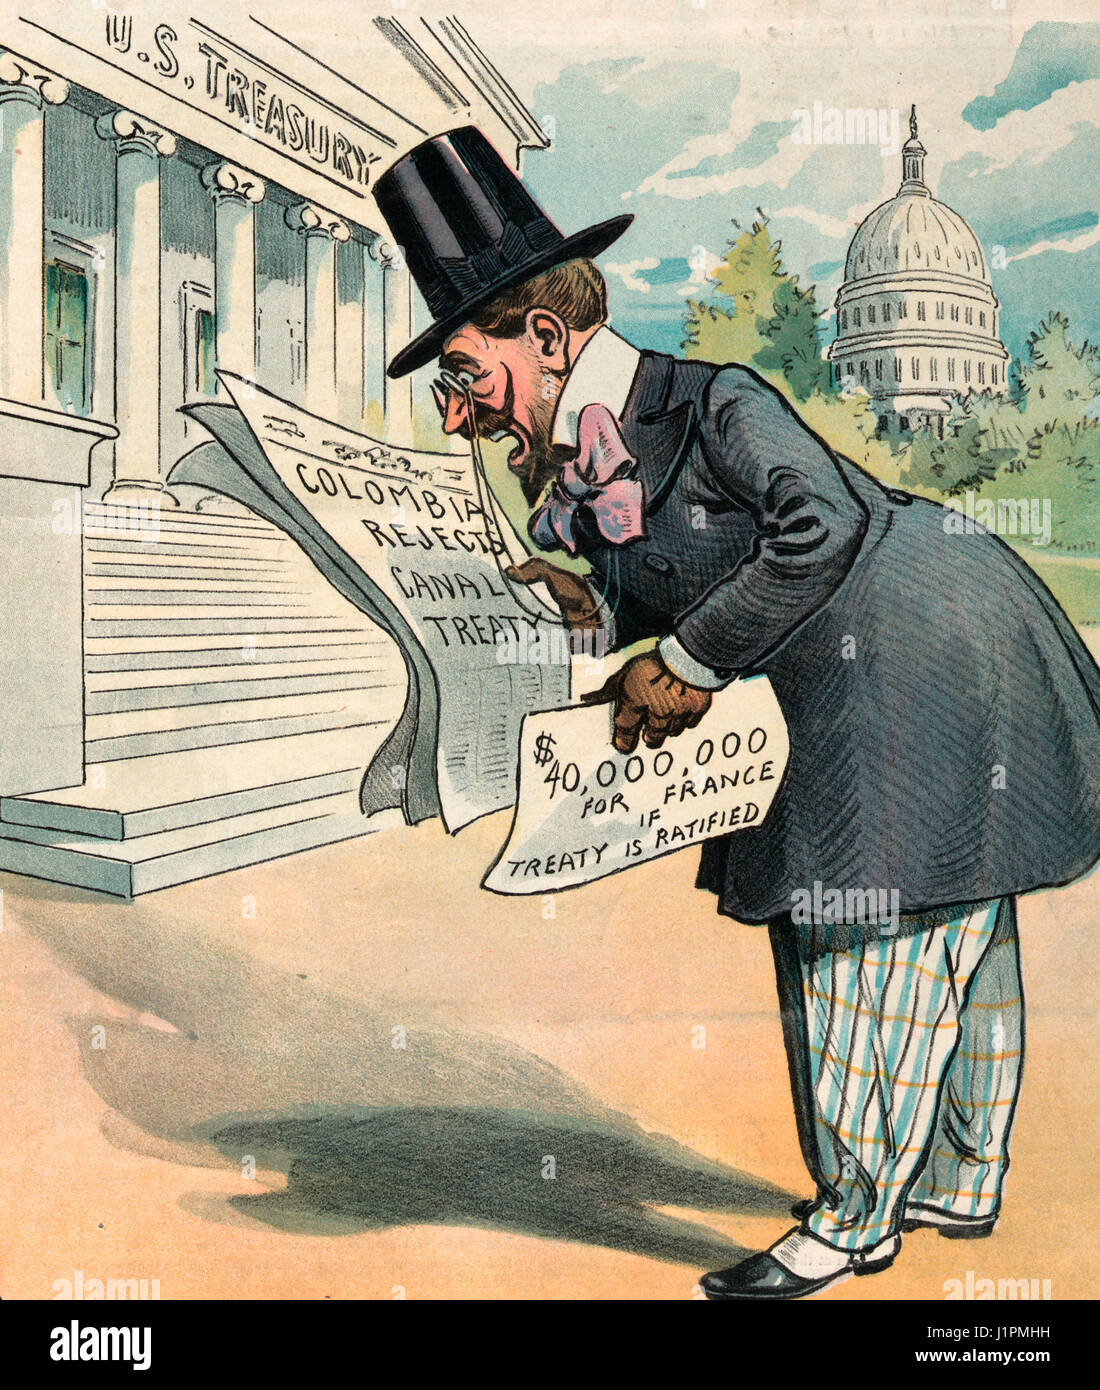 "Sacre Bleu!" Abbildung zeigt ein Franzose stehen außerhalb des US-Finanzministeriums Gebäude, in einer Hand hält er eine Zeitung, die "Kolumbien lehnt Kanal Vertrag" heißt und in der anderen Hand eine Papier mit der Aufschrift "40.000.000 für Frankreich wenn Vertrag ratifiziert wird". Es scheint, dass er dabei war, einen Schuldschein für $ 40 Millionen, Bareinnahmen nur um im letzten Moment feststellen, dass es wertlos ist. Politische Karikatur, 1903 Stockfoto